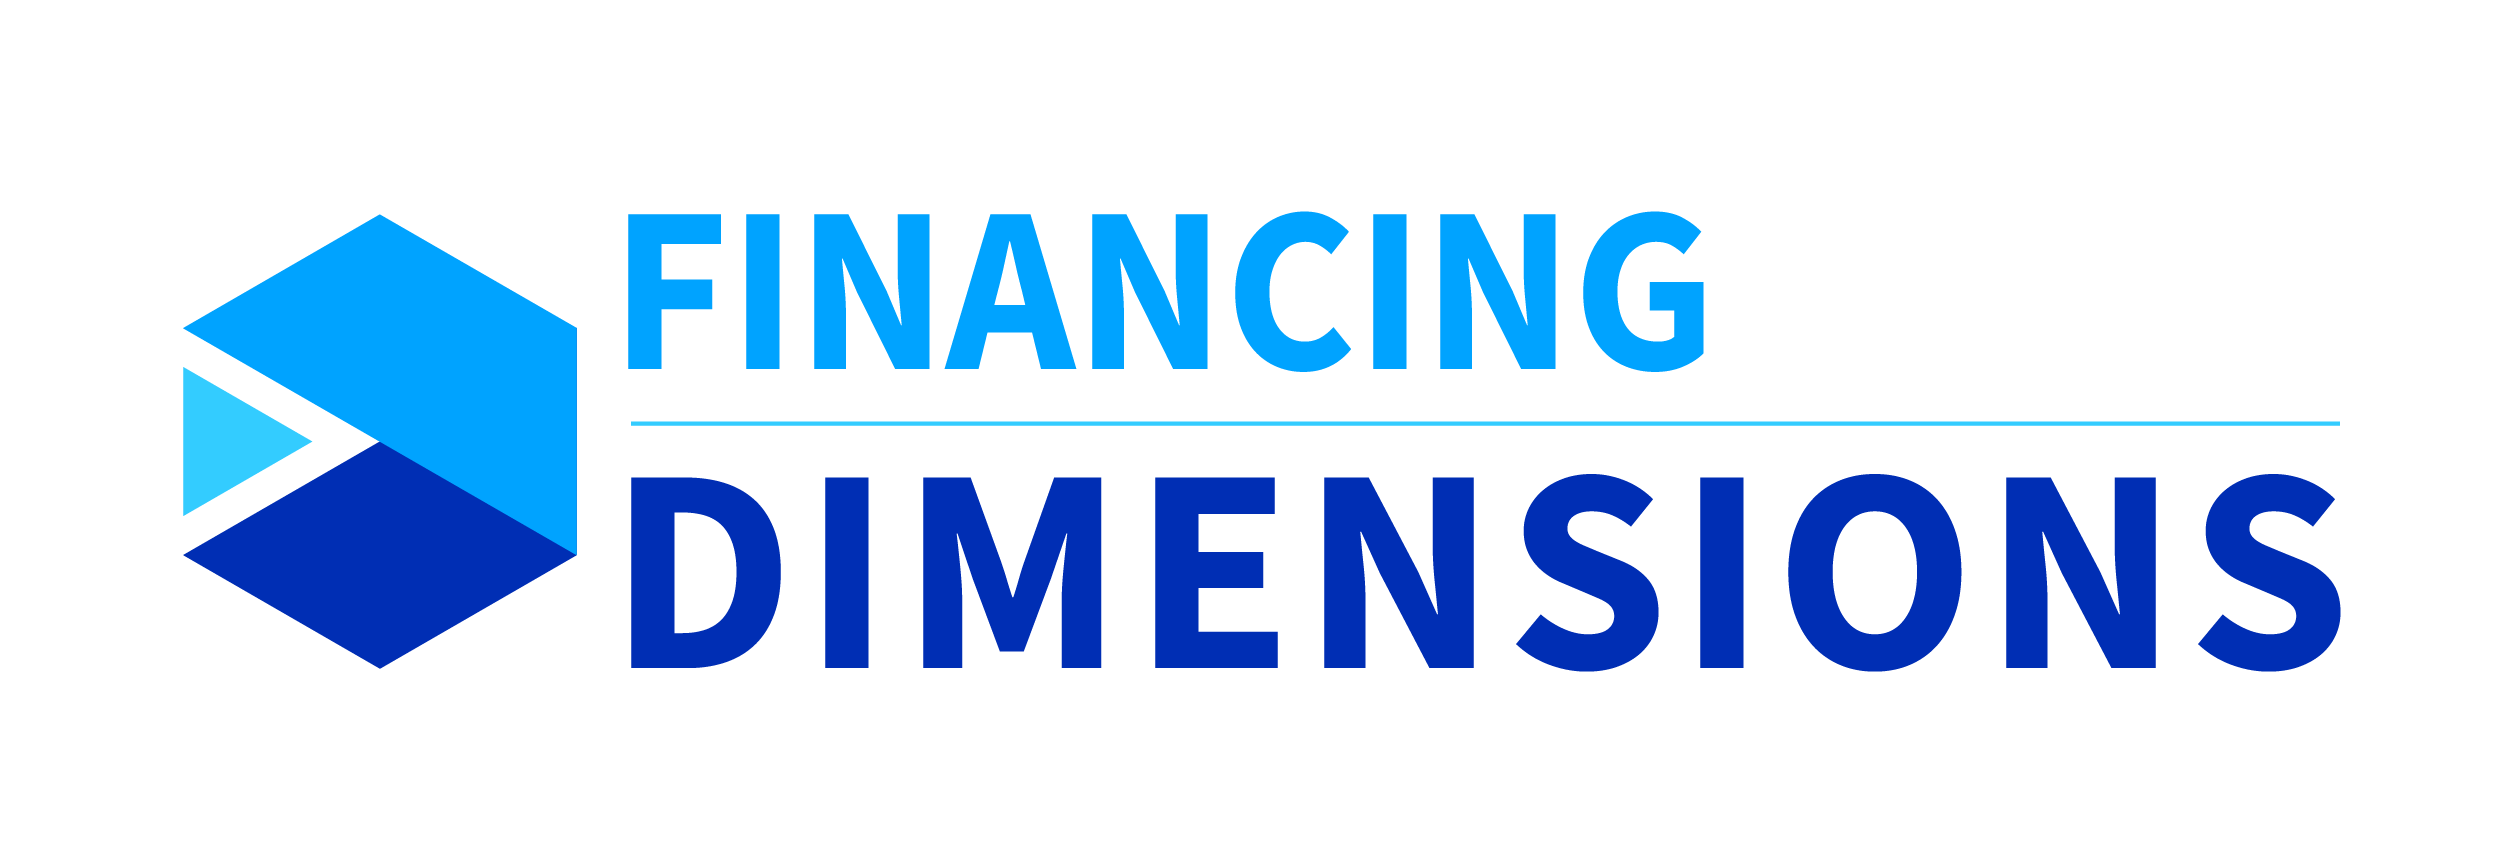 Acceltech Pte Ltd - Dimensions de financement